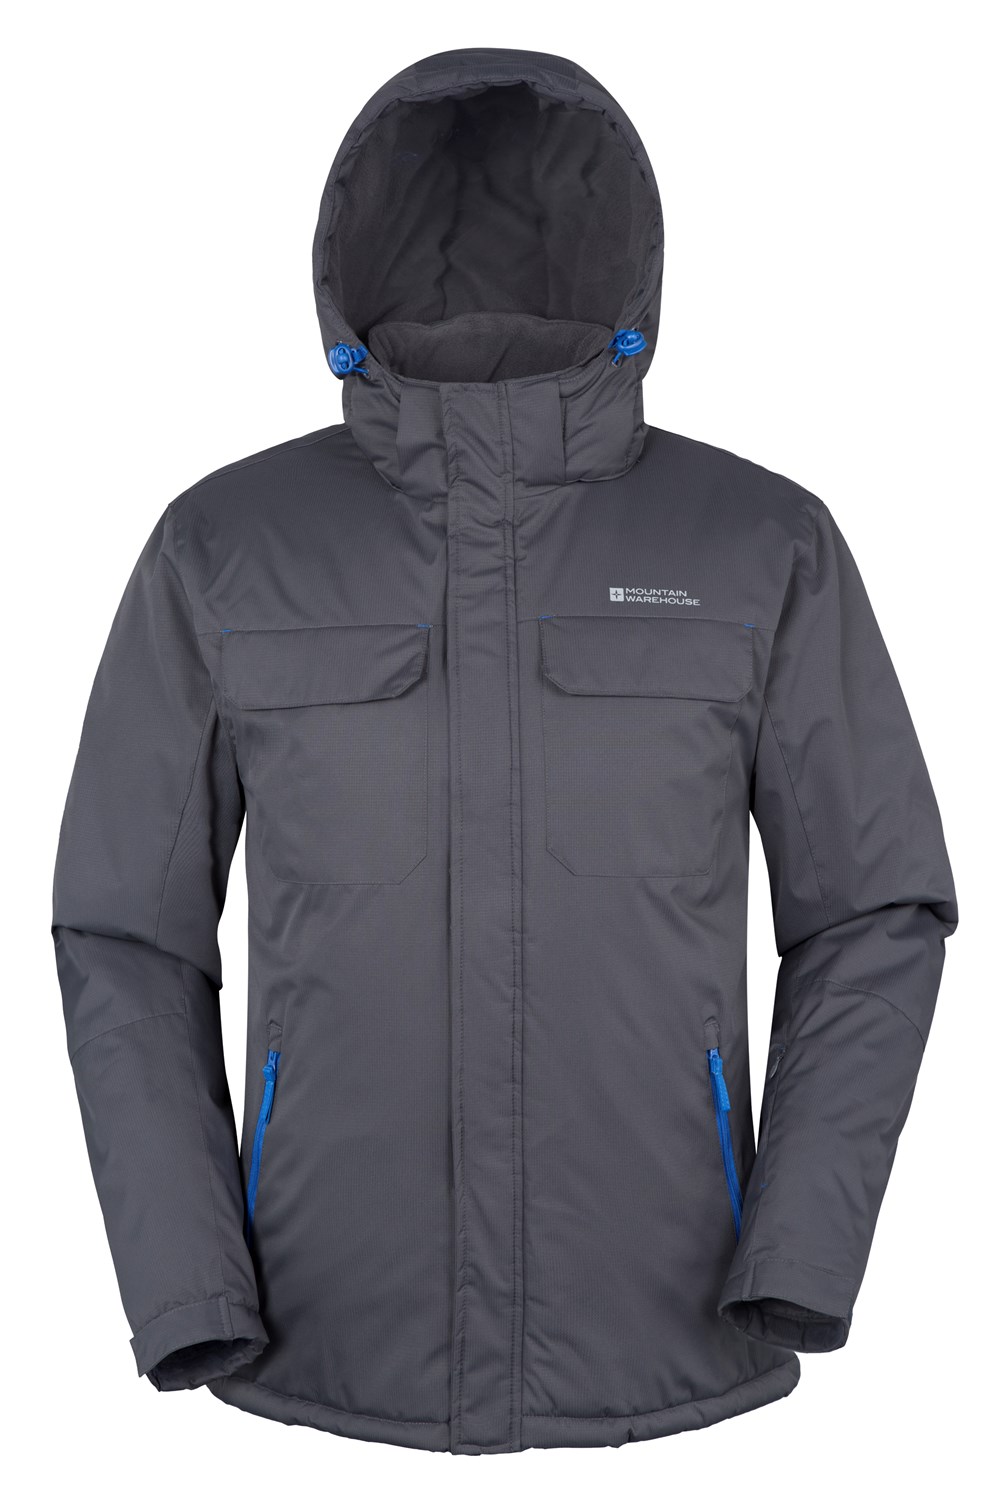 Mountain Warehouse Eclipse Mens Ski Jacket | eBay